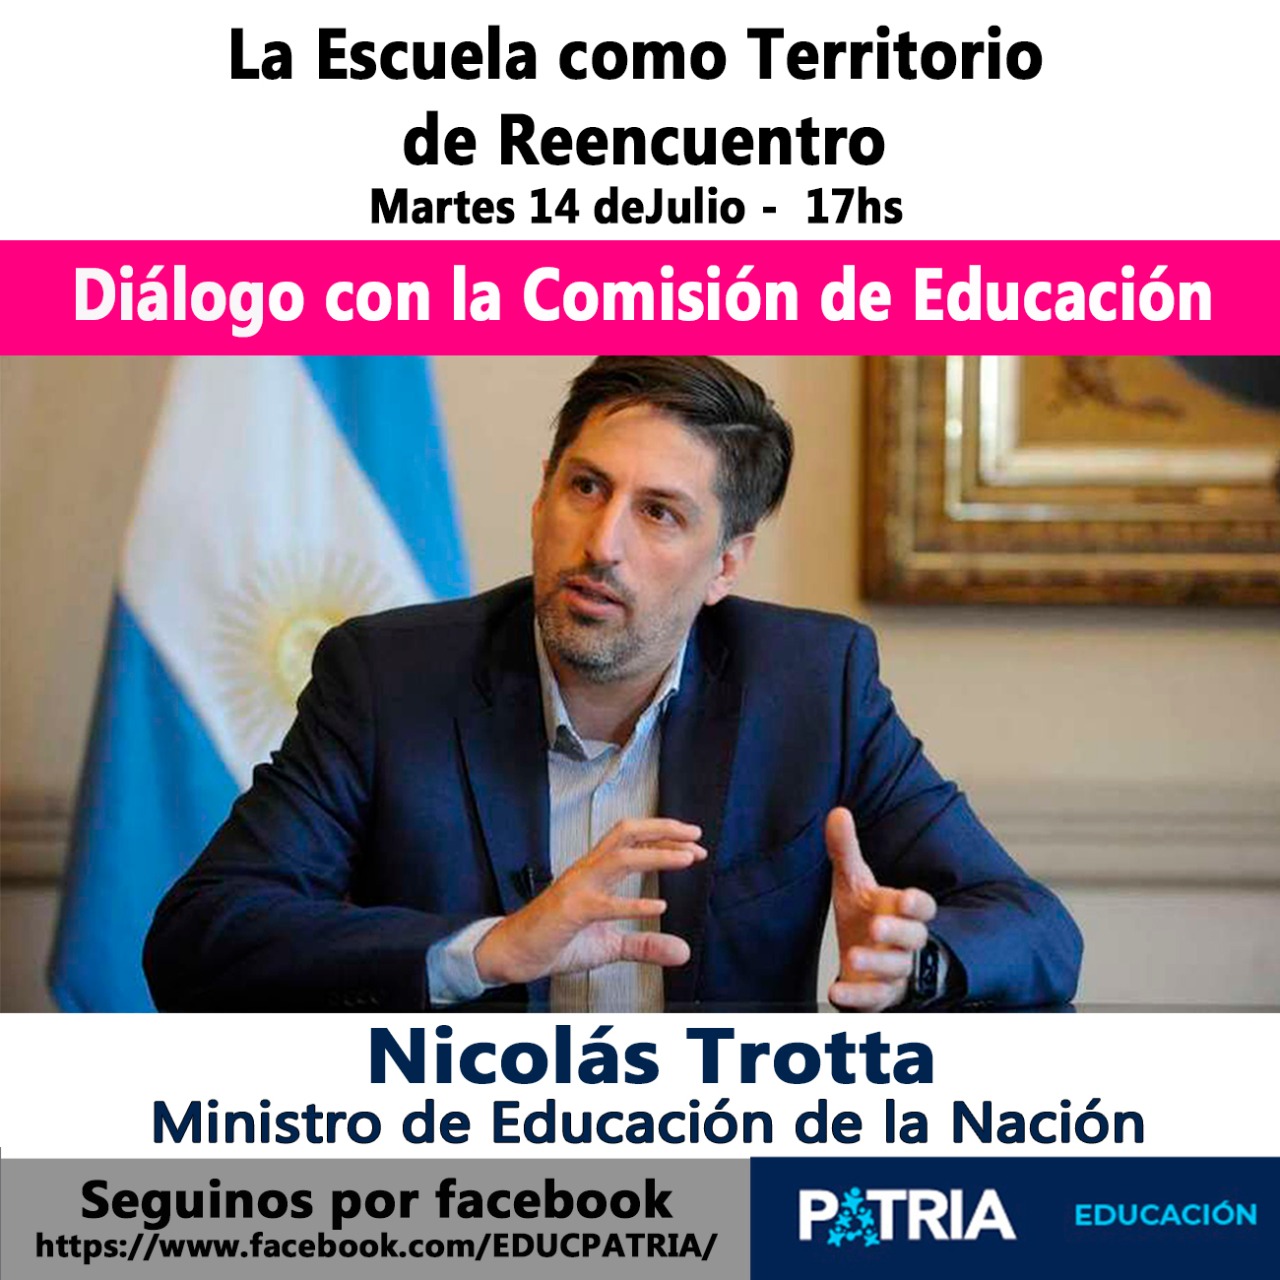 La escuela como territorio de reencuentro: Nicolás Trotta dialogará con la comisión de Educación